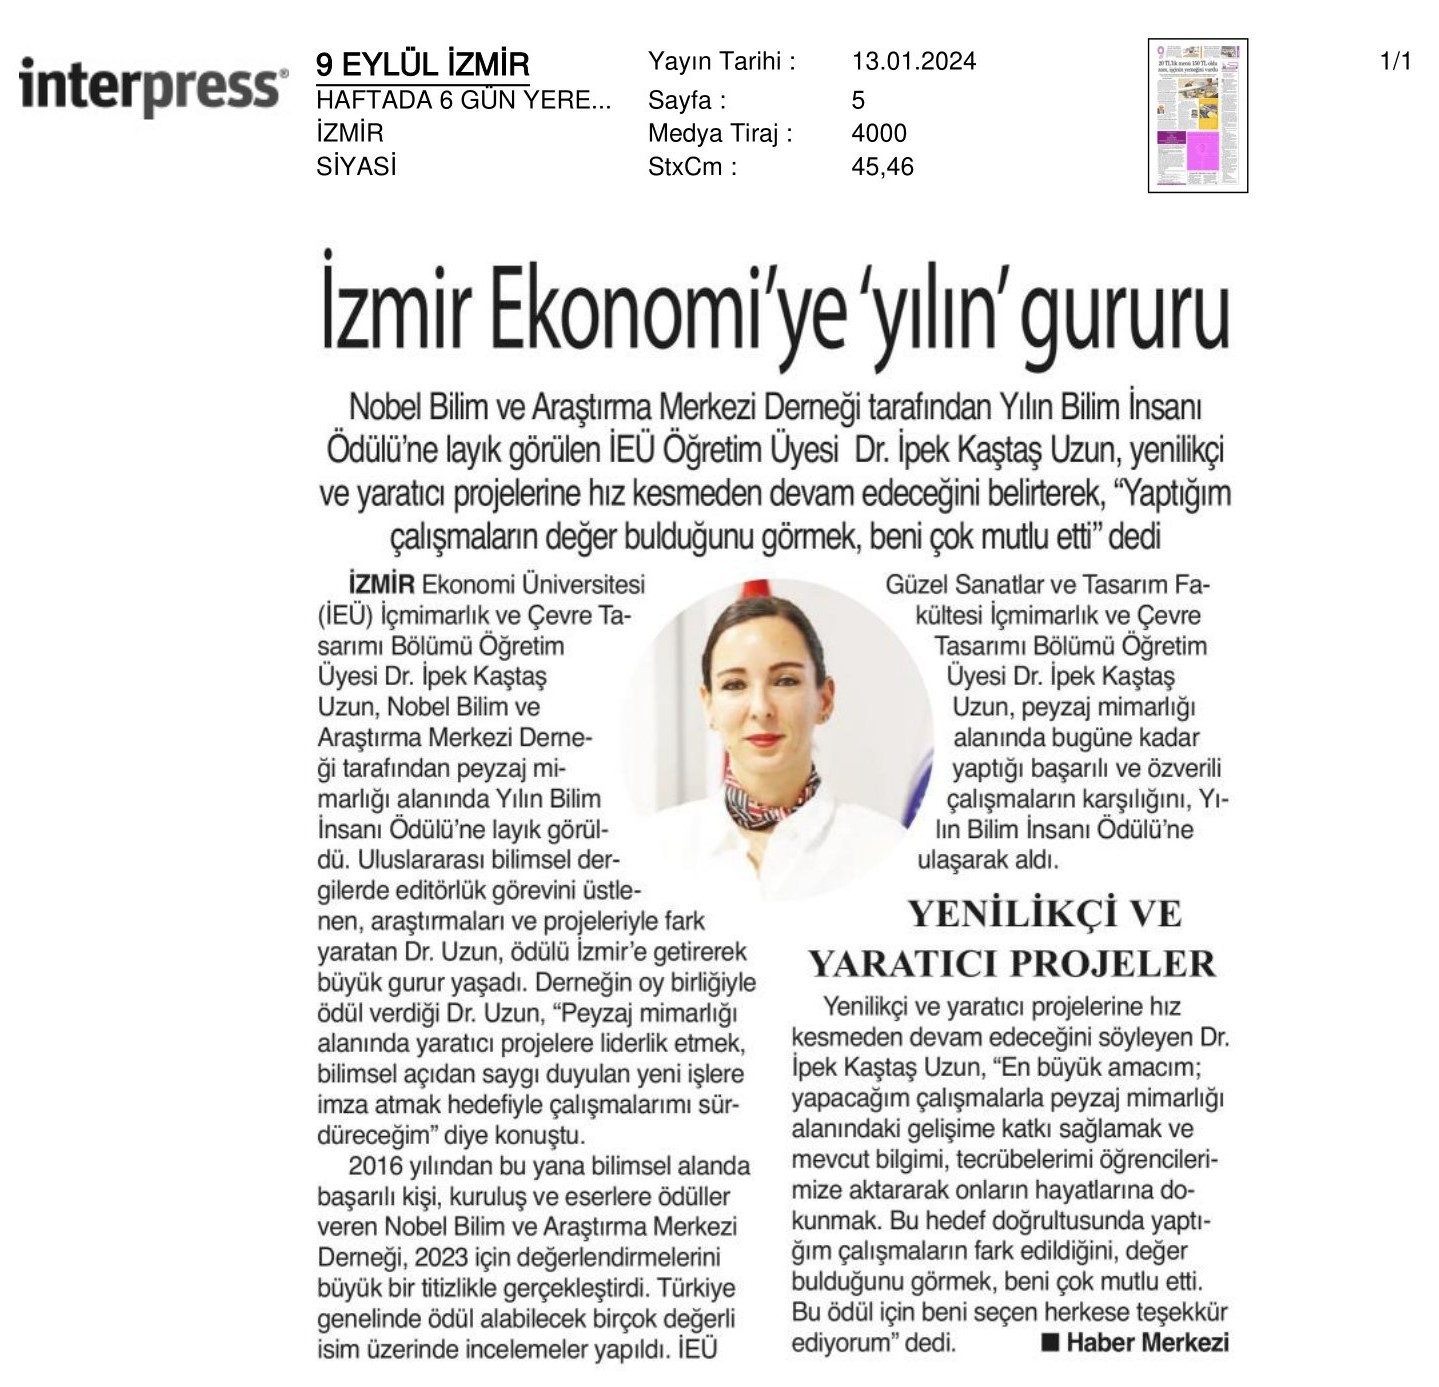 İzmir Ekonomi’ye ‘Yılın’ Gururu